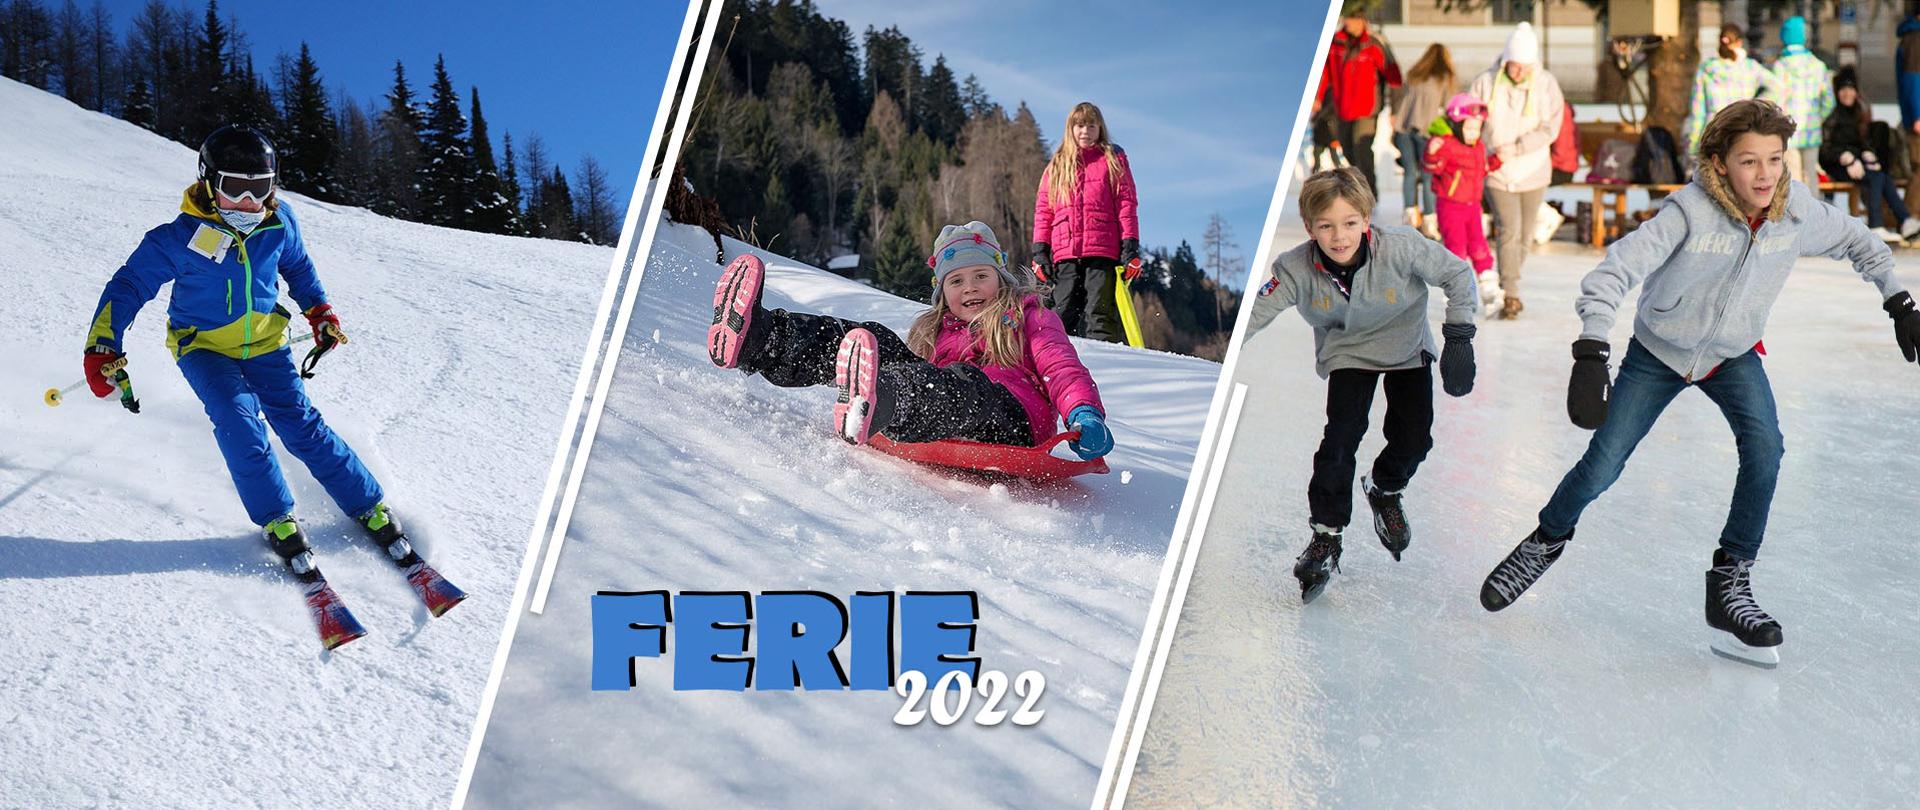 Zdjęcie przedstawiające dzieci w trzech aktywnościach zimowych: jeździe na nartach, zjeżdżaniu z górki na ślizgaczu i jeździe na łyżwach po lodowisku. 